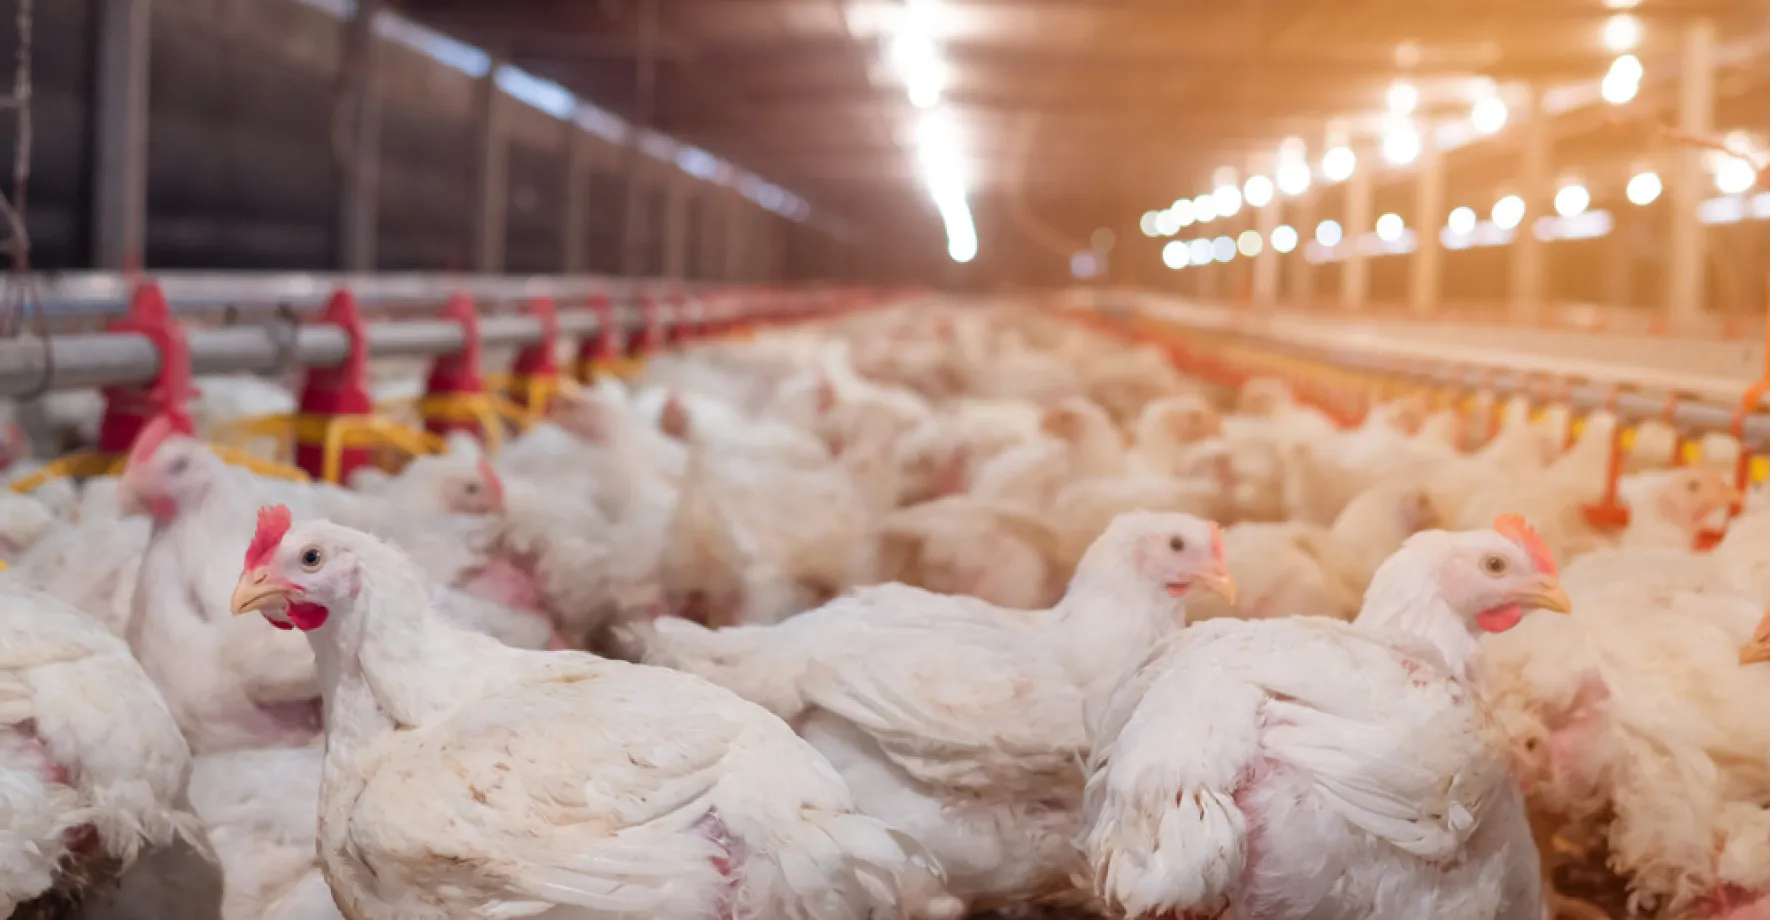 Ptačí chřipka řádí v Sedlčanech: velkochov utratí 12 000 kuřat a 1000 krůt